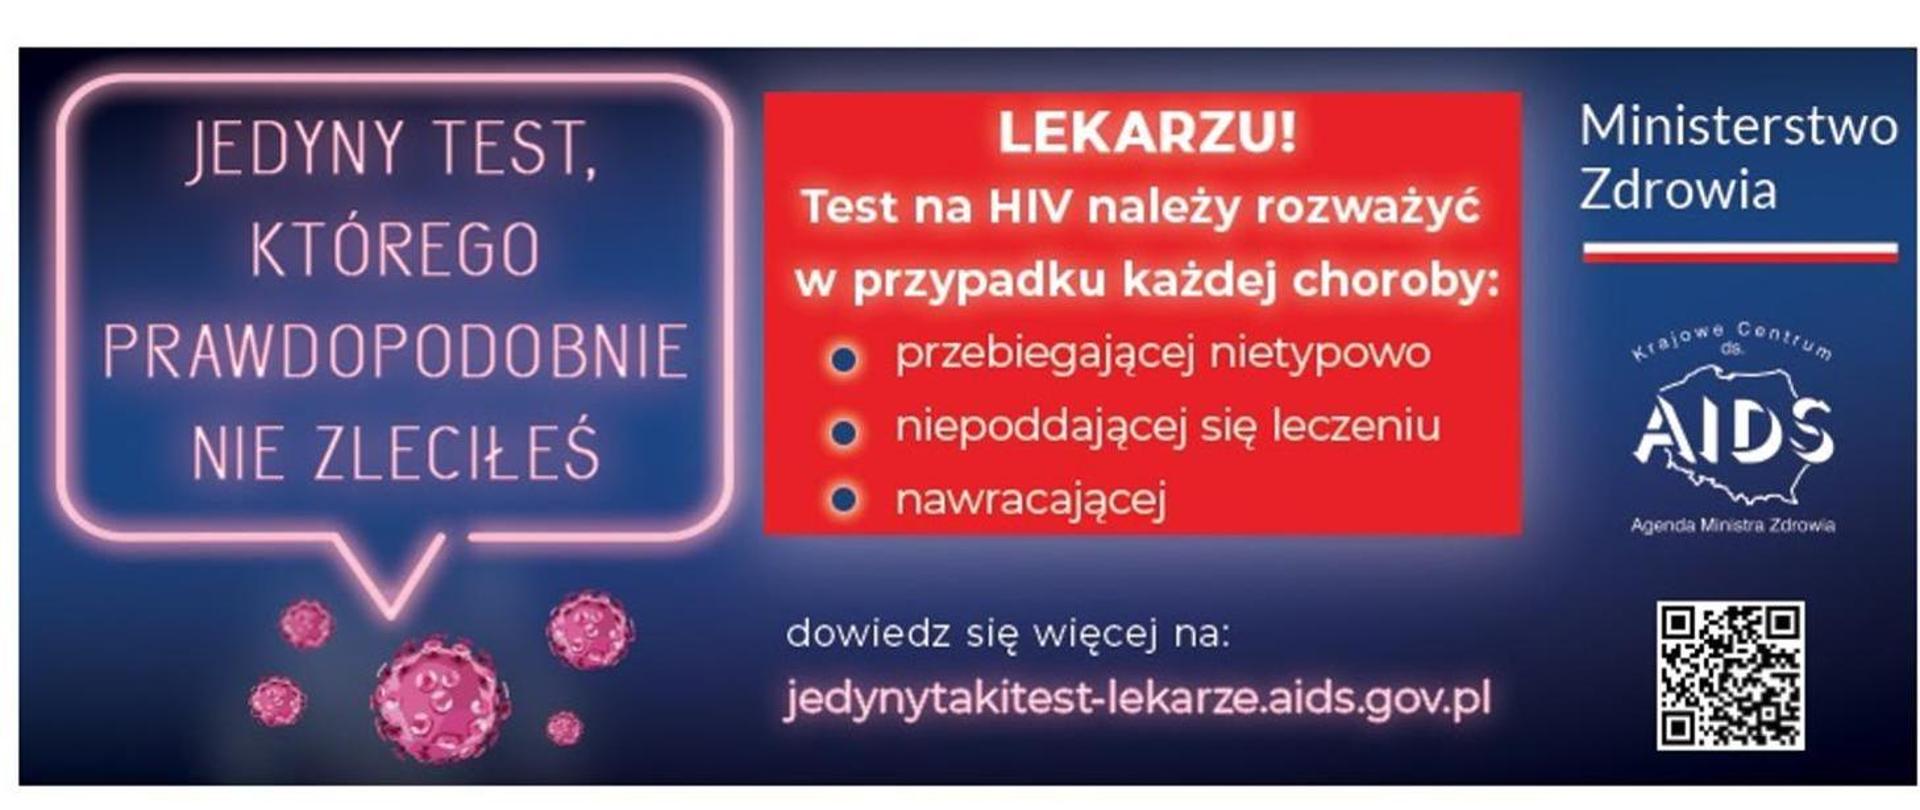 Po lewej znajduje się tekst - "jedyny test, którego prawdopodobnie nie zleciłeś", w centrum hasło: "Lekarzu! Test na HIV należy rozważyć w przypadku każdej choroby: przebiegającej nietypowo, niepoddającej się leczeniu, nawracającej". Jest też adres strony, na której można dowiedzieć się więcej: jedynytakitest-lekarze.aids.gov.pl